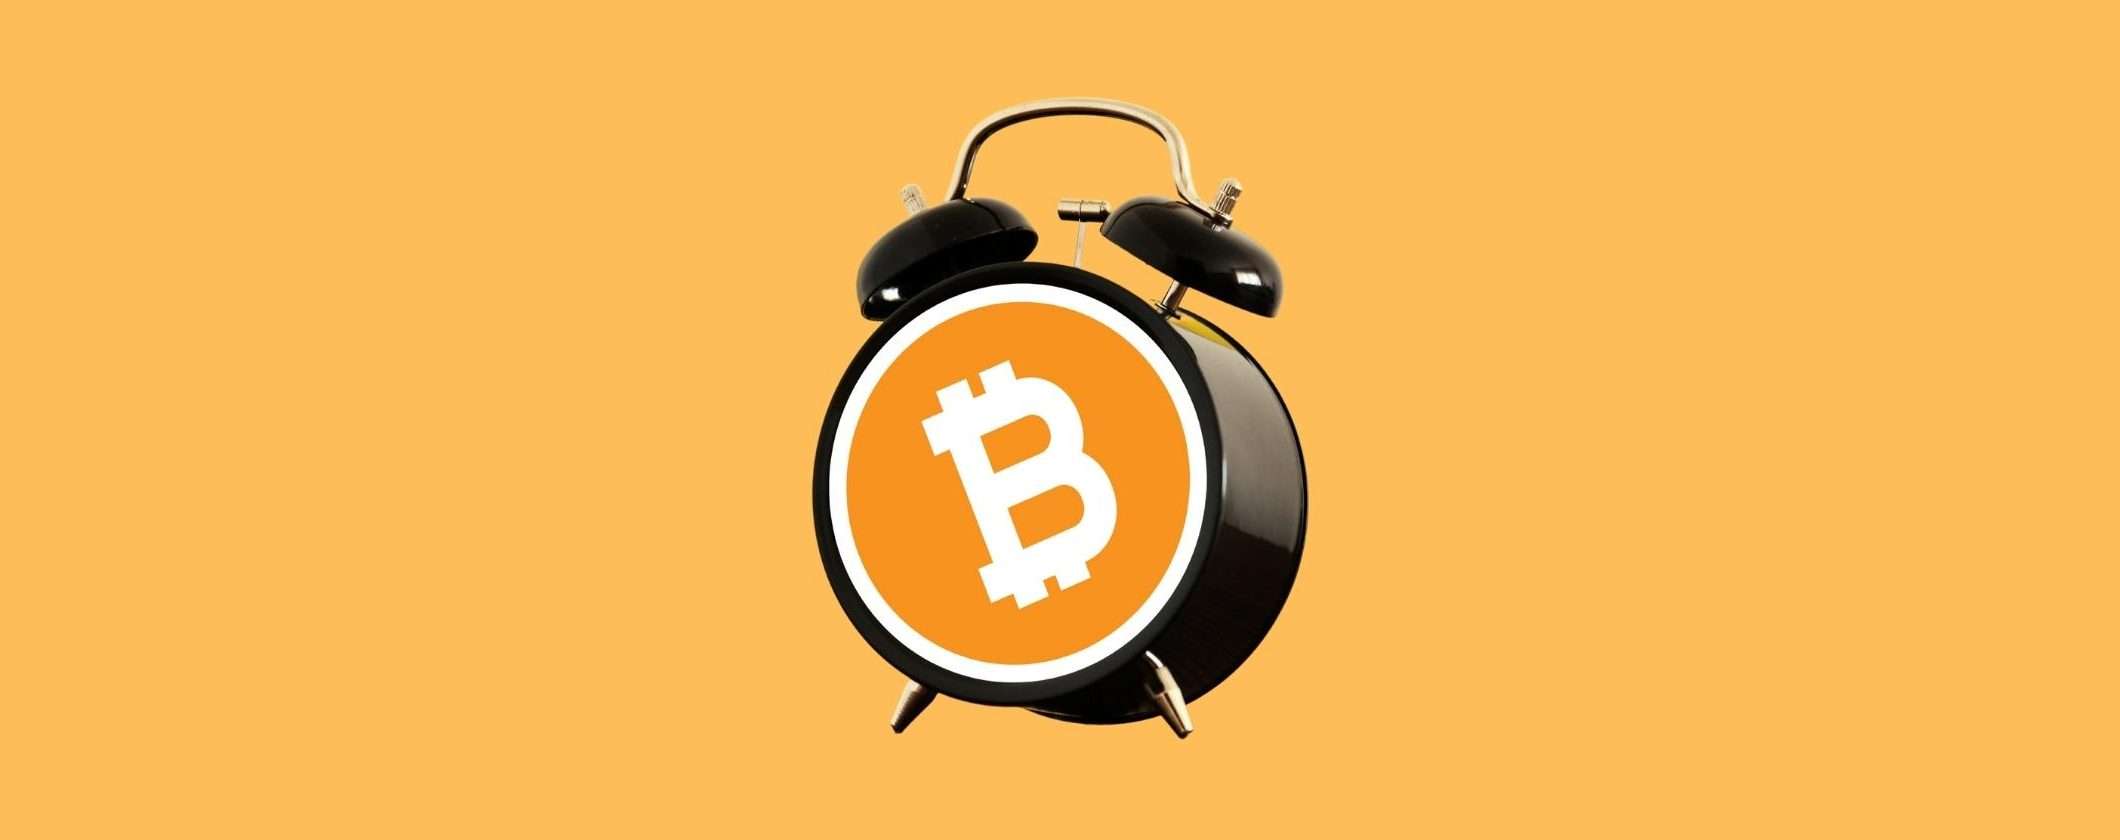 Bitcoin a un prezzo interessante: dove acquistare la crypto long term